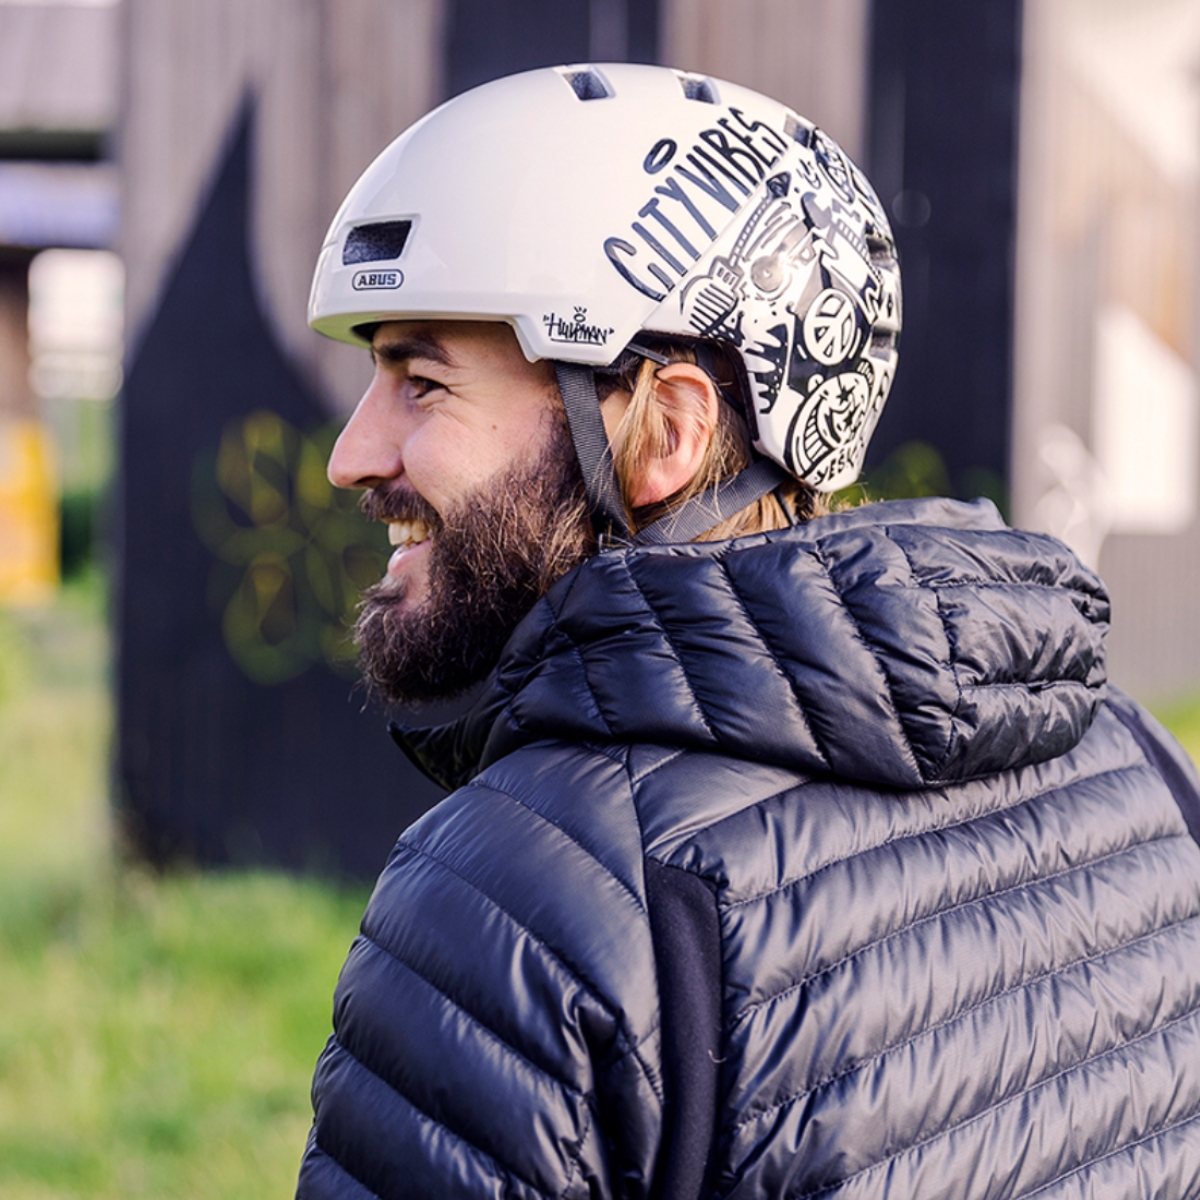 Man wearing Abus bicycle helmet